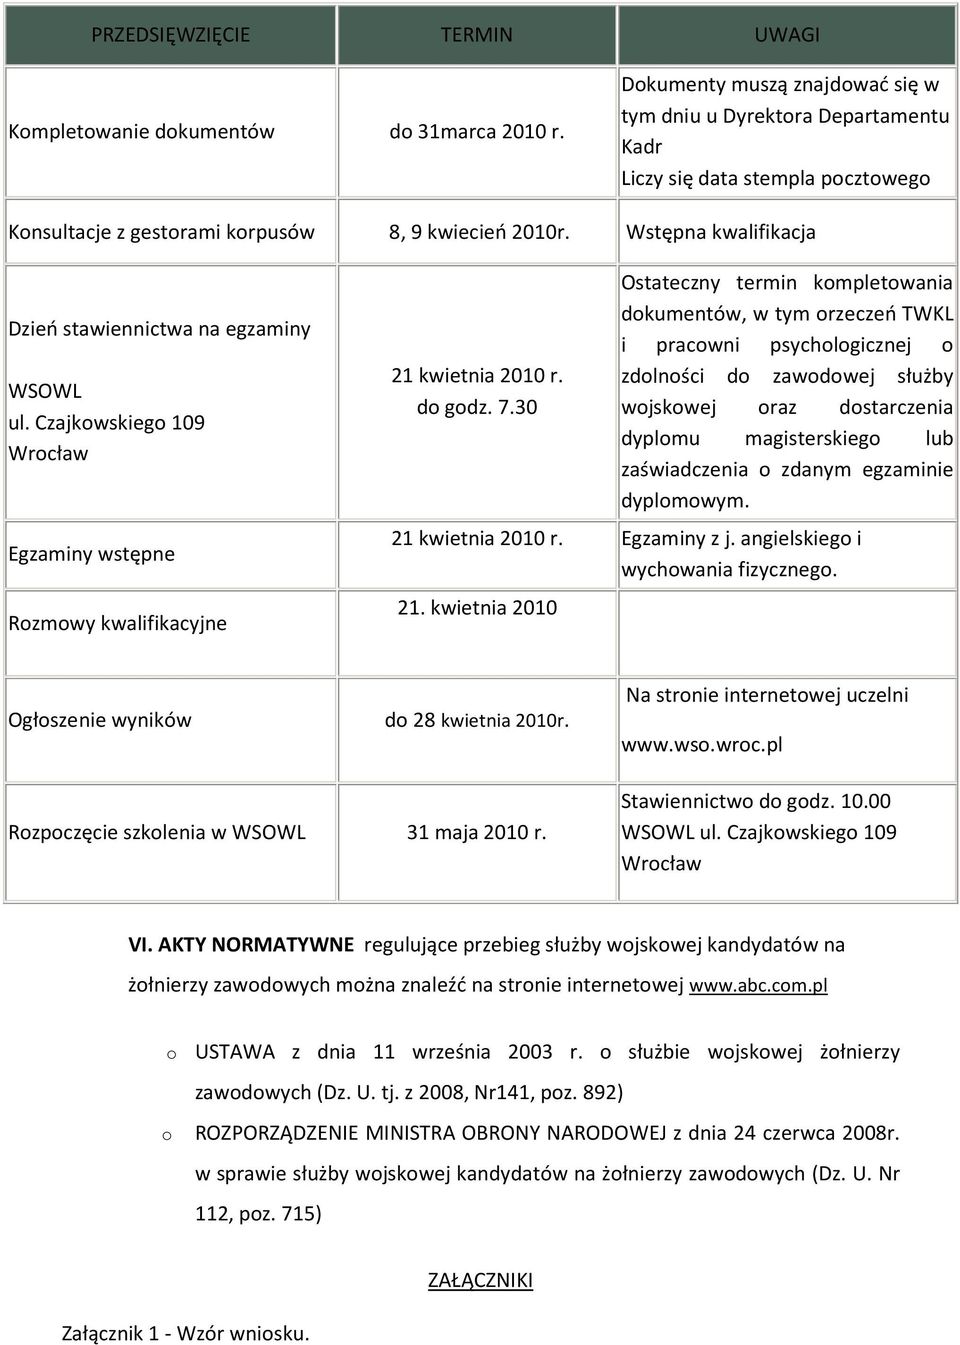 Wstępna kwalifikacja Dzień stawiennictwa na egzaminy WSOWL ul. Czajkowskiego 109 Wrocław Egzaminy wstępne Rozmowy kwalifikacyjne 21 kwietnia 2010 r. do godz. 7.